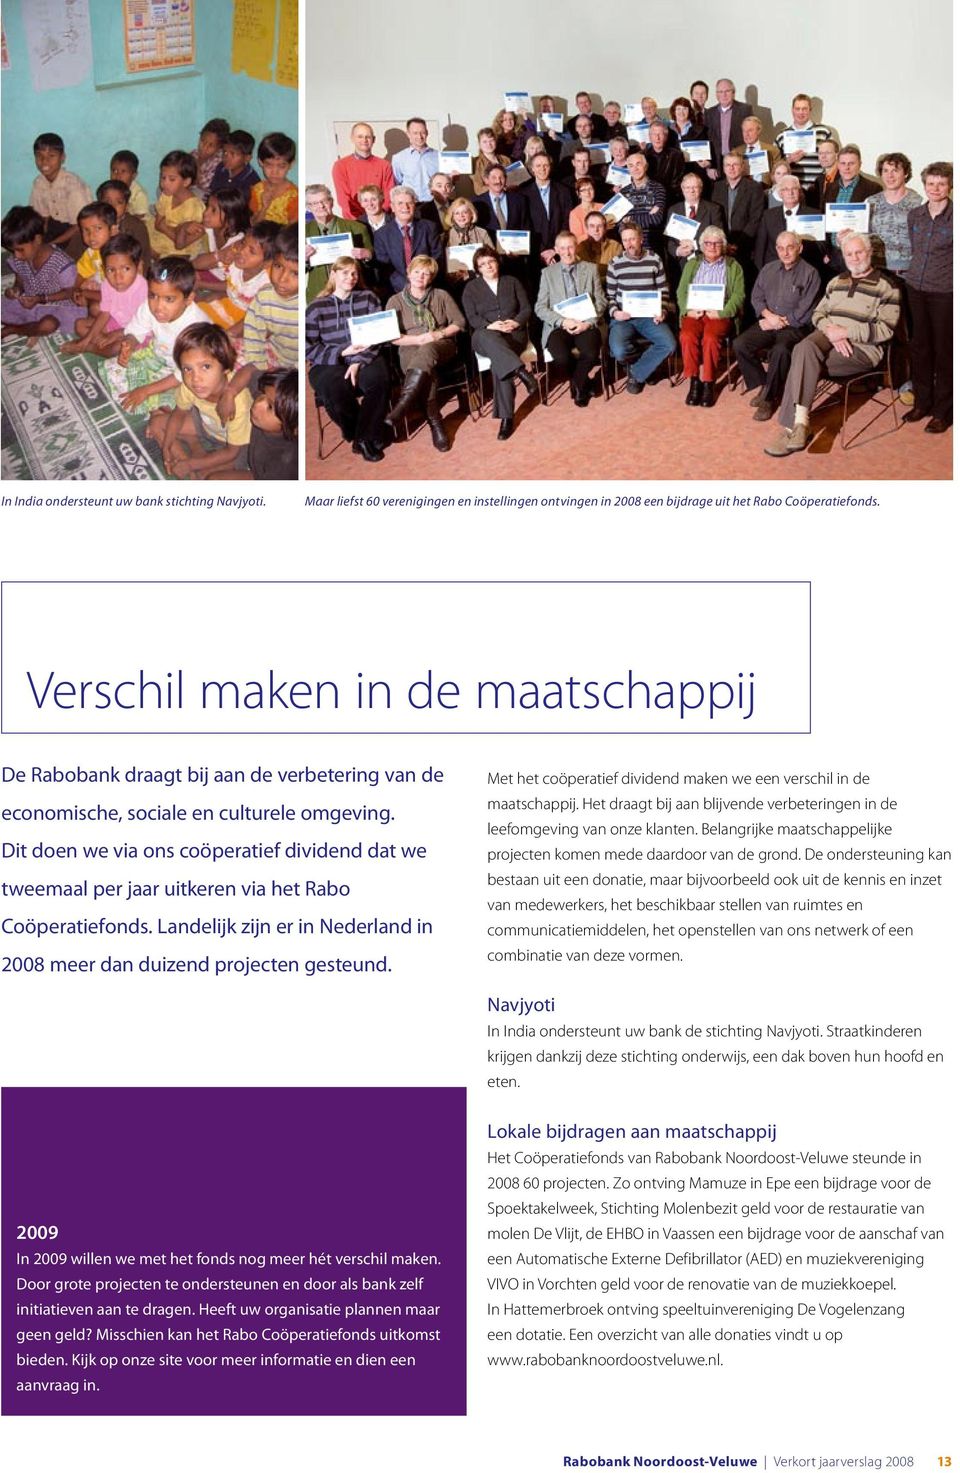 Dit doen we via ons coöperatief dividend dat we tweemaal per jaar uitkeren via het Rabo Coöperatiefonds. Landelijk zijn er in Nederland in 2008 meer dan duizend projecten gesteund.